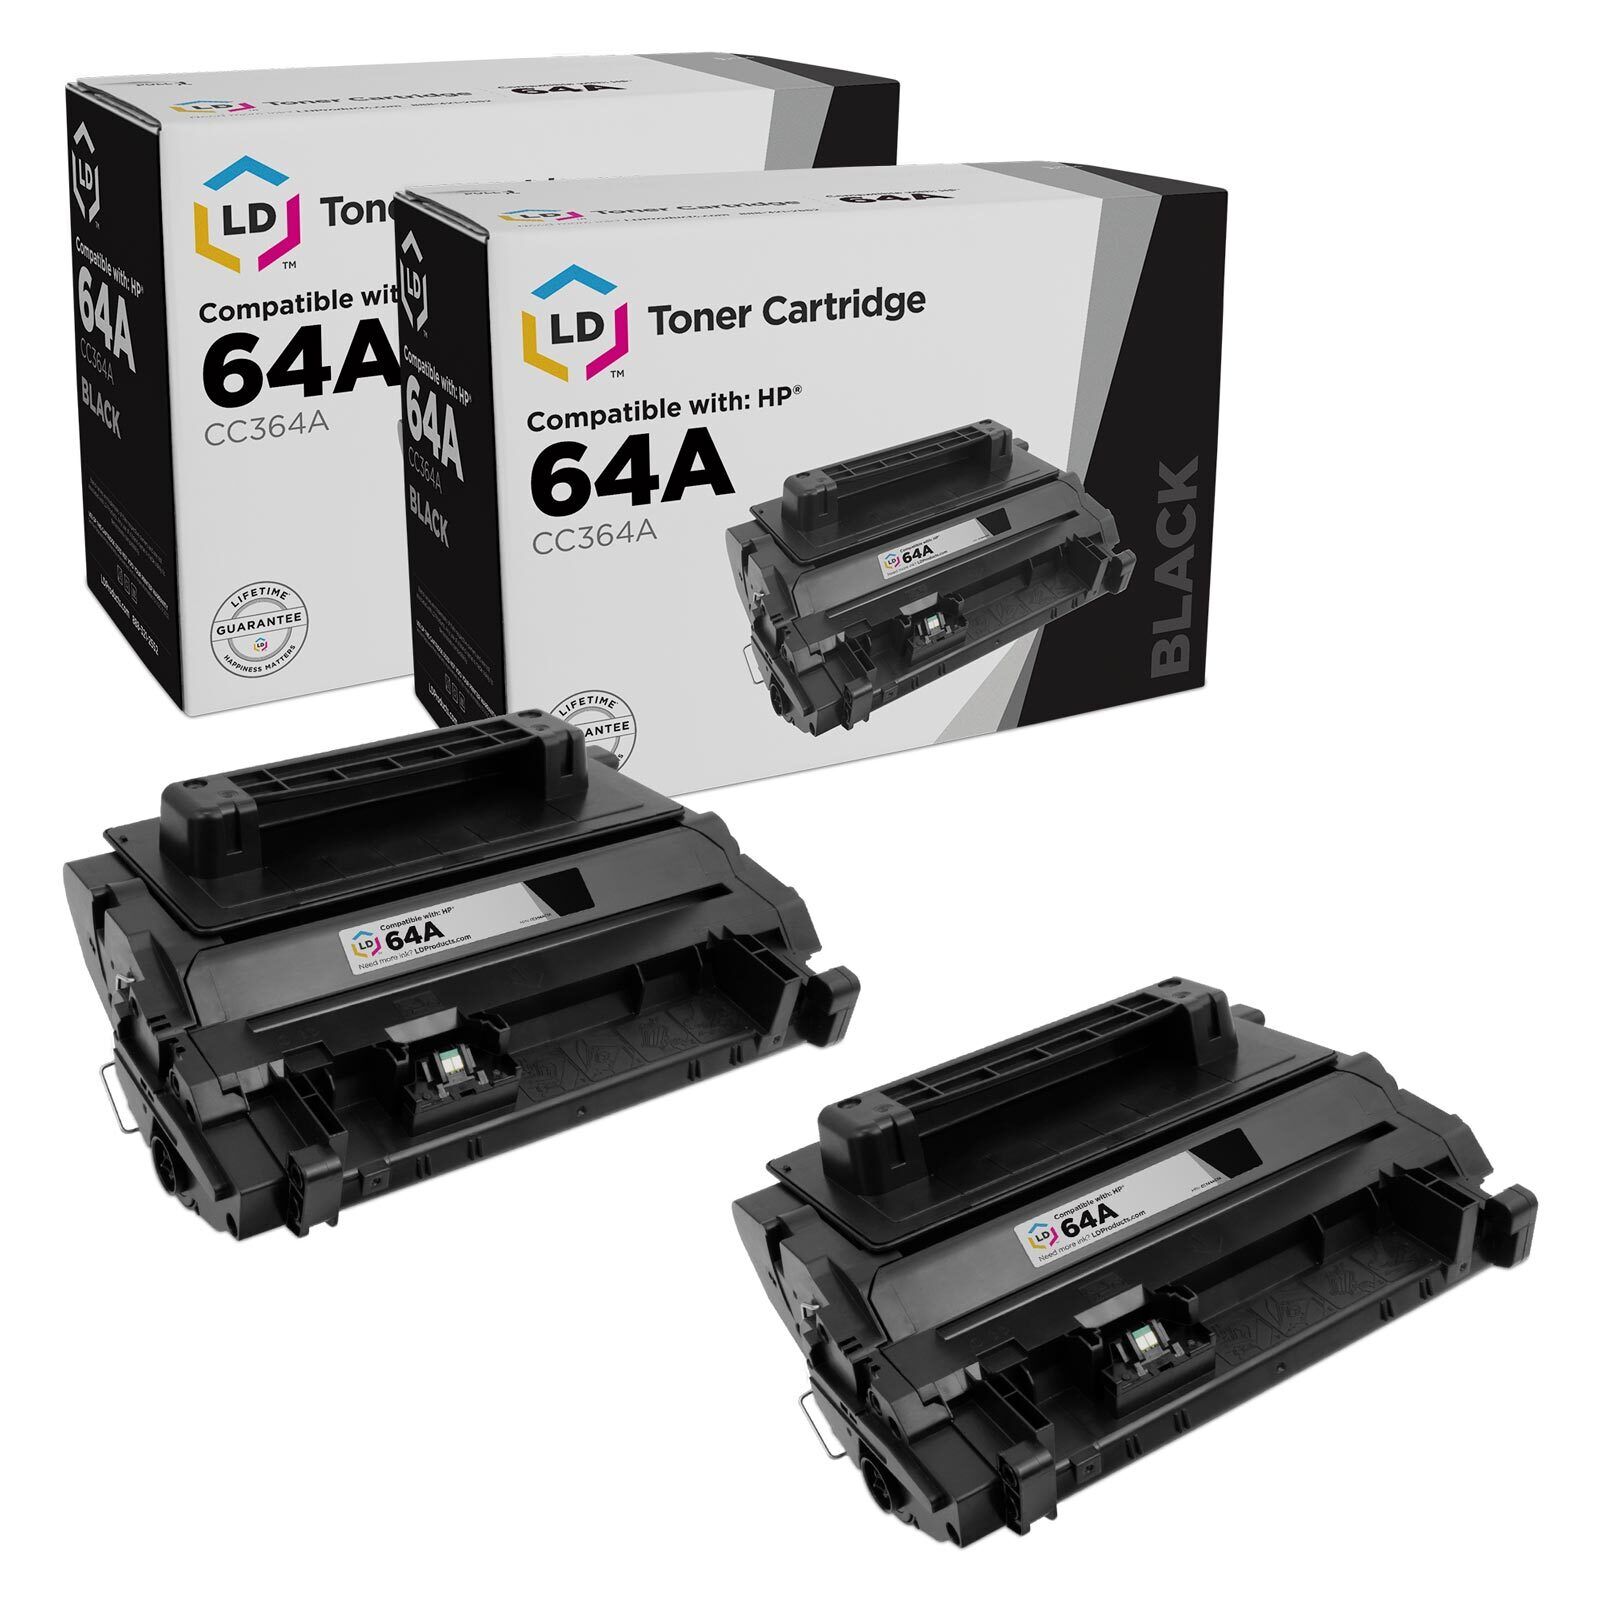 LD 2PK CC364A 64A SY Black Laser Toner Cartridge for HP LaserJet P4015tn P4515tn